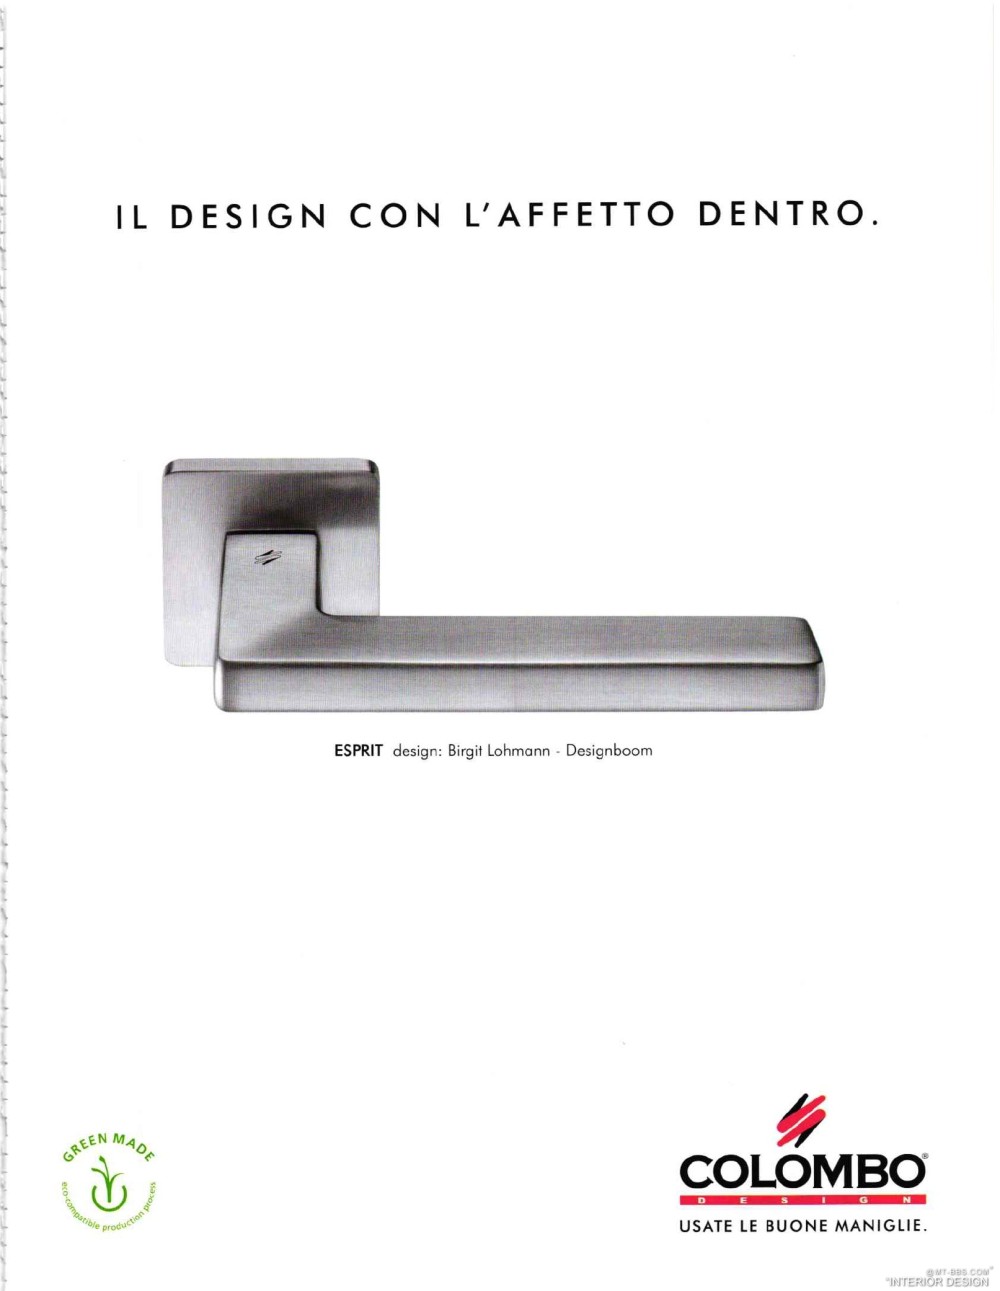 意大利AD 杂志 2012年全年JPG高清版本 全免（上传完毕）_0045.jpg